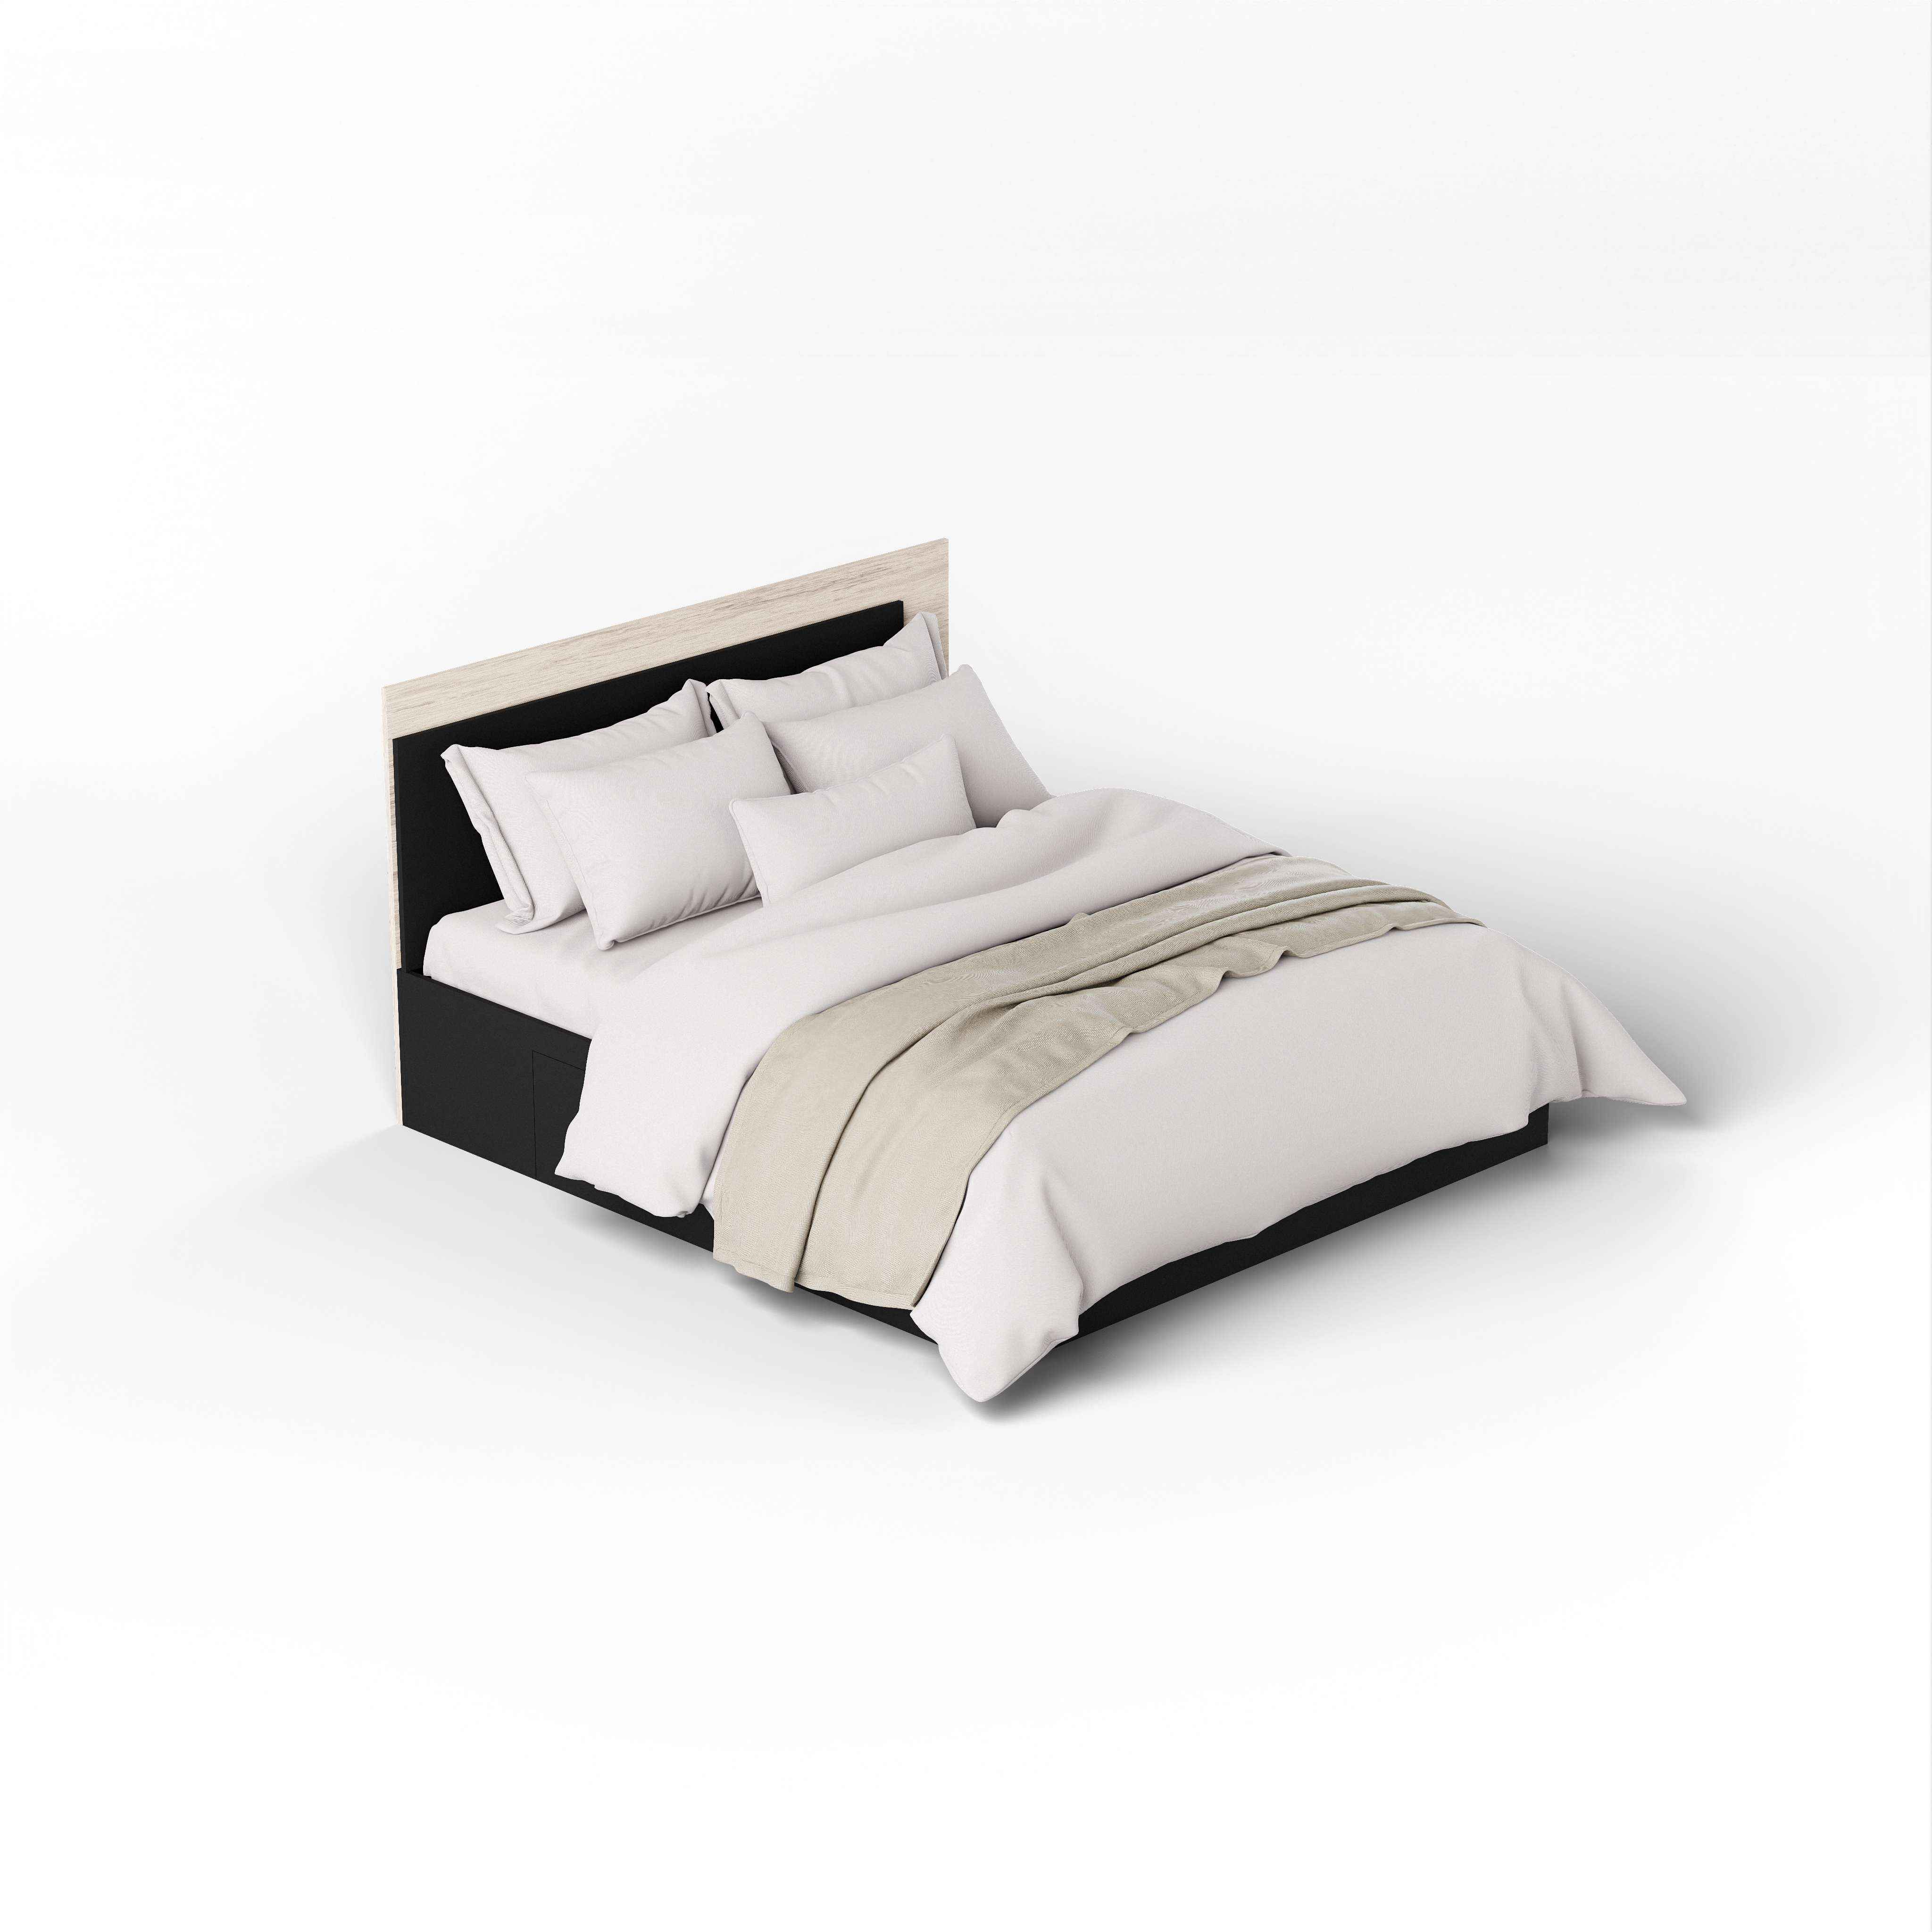 Minsan Queen Size Bed